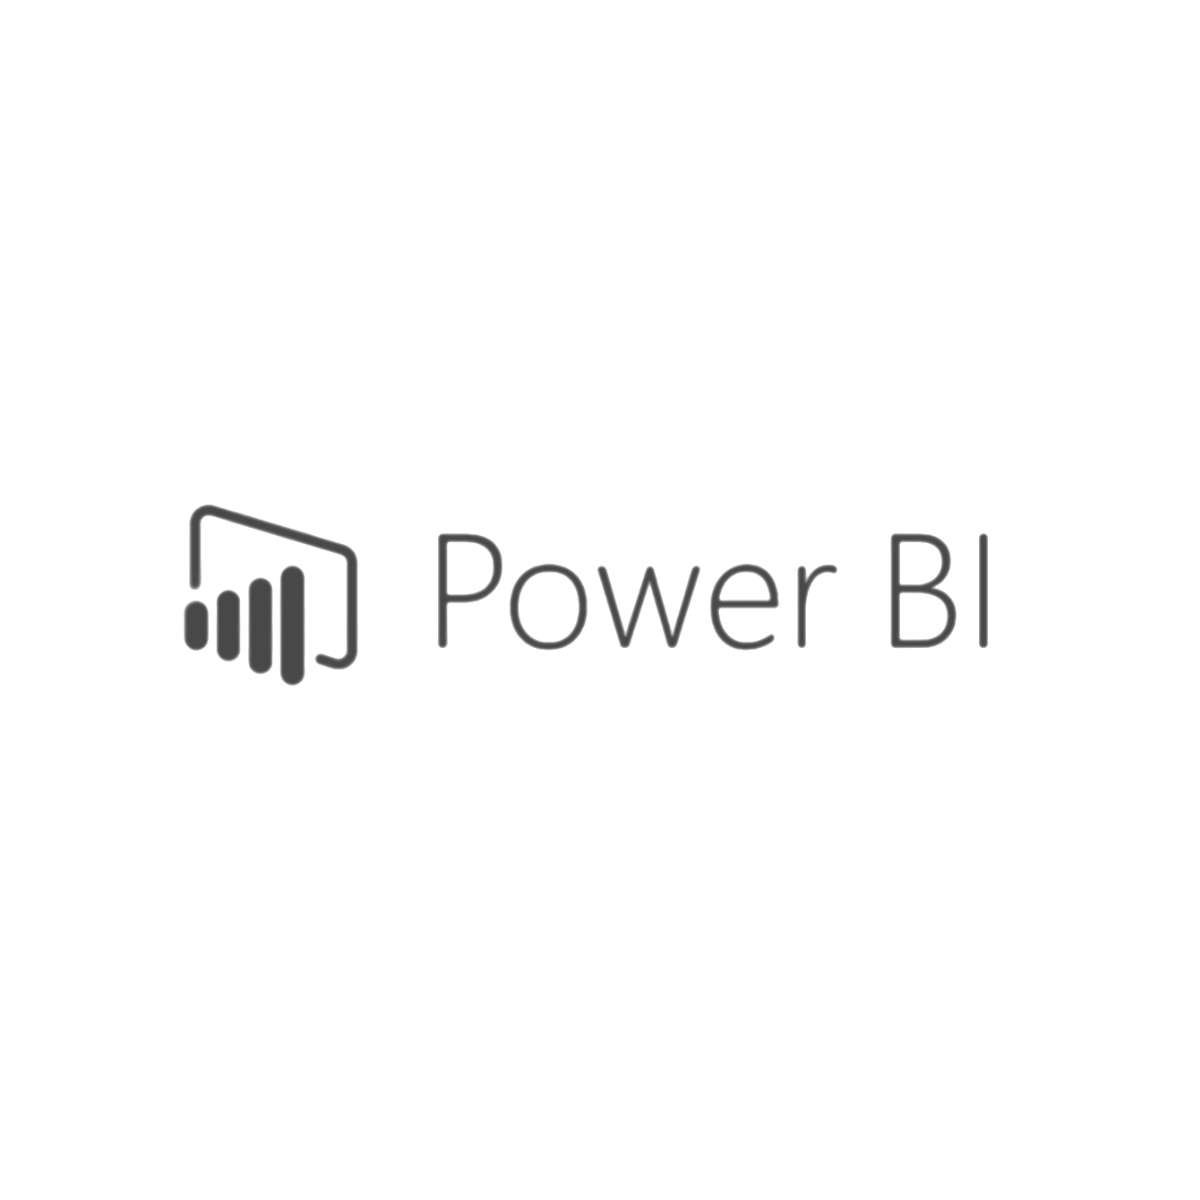 Power BI (Copy)